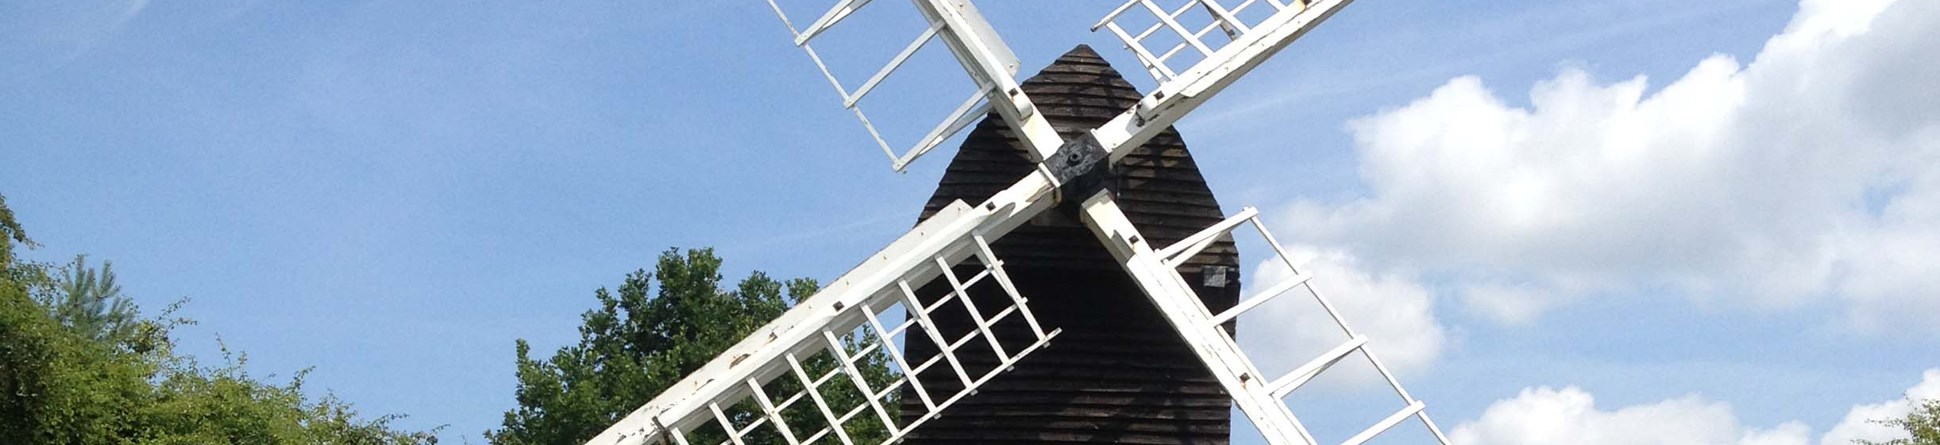 Windmill sails